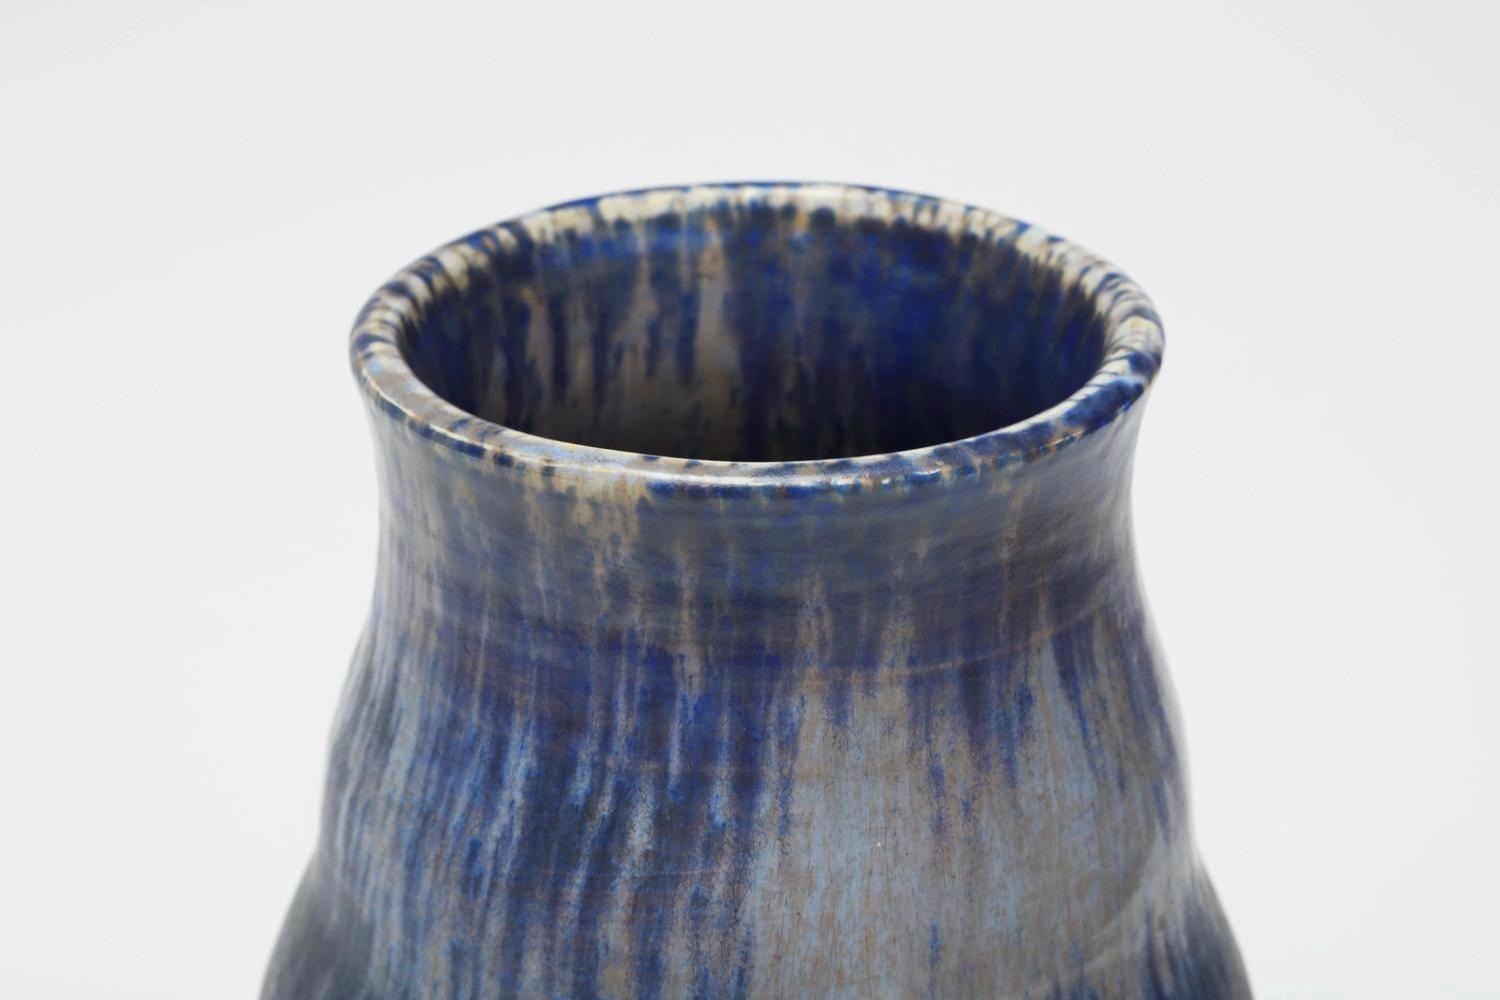 Le vase en céramique de Ruskin Pottery est fabriqué en grès émaillé à la main. Signature et date imprimées au verso : [Ruskin England 1927].

A propos du Studio :
